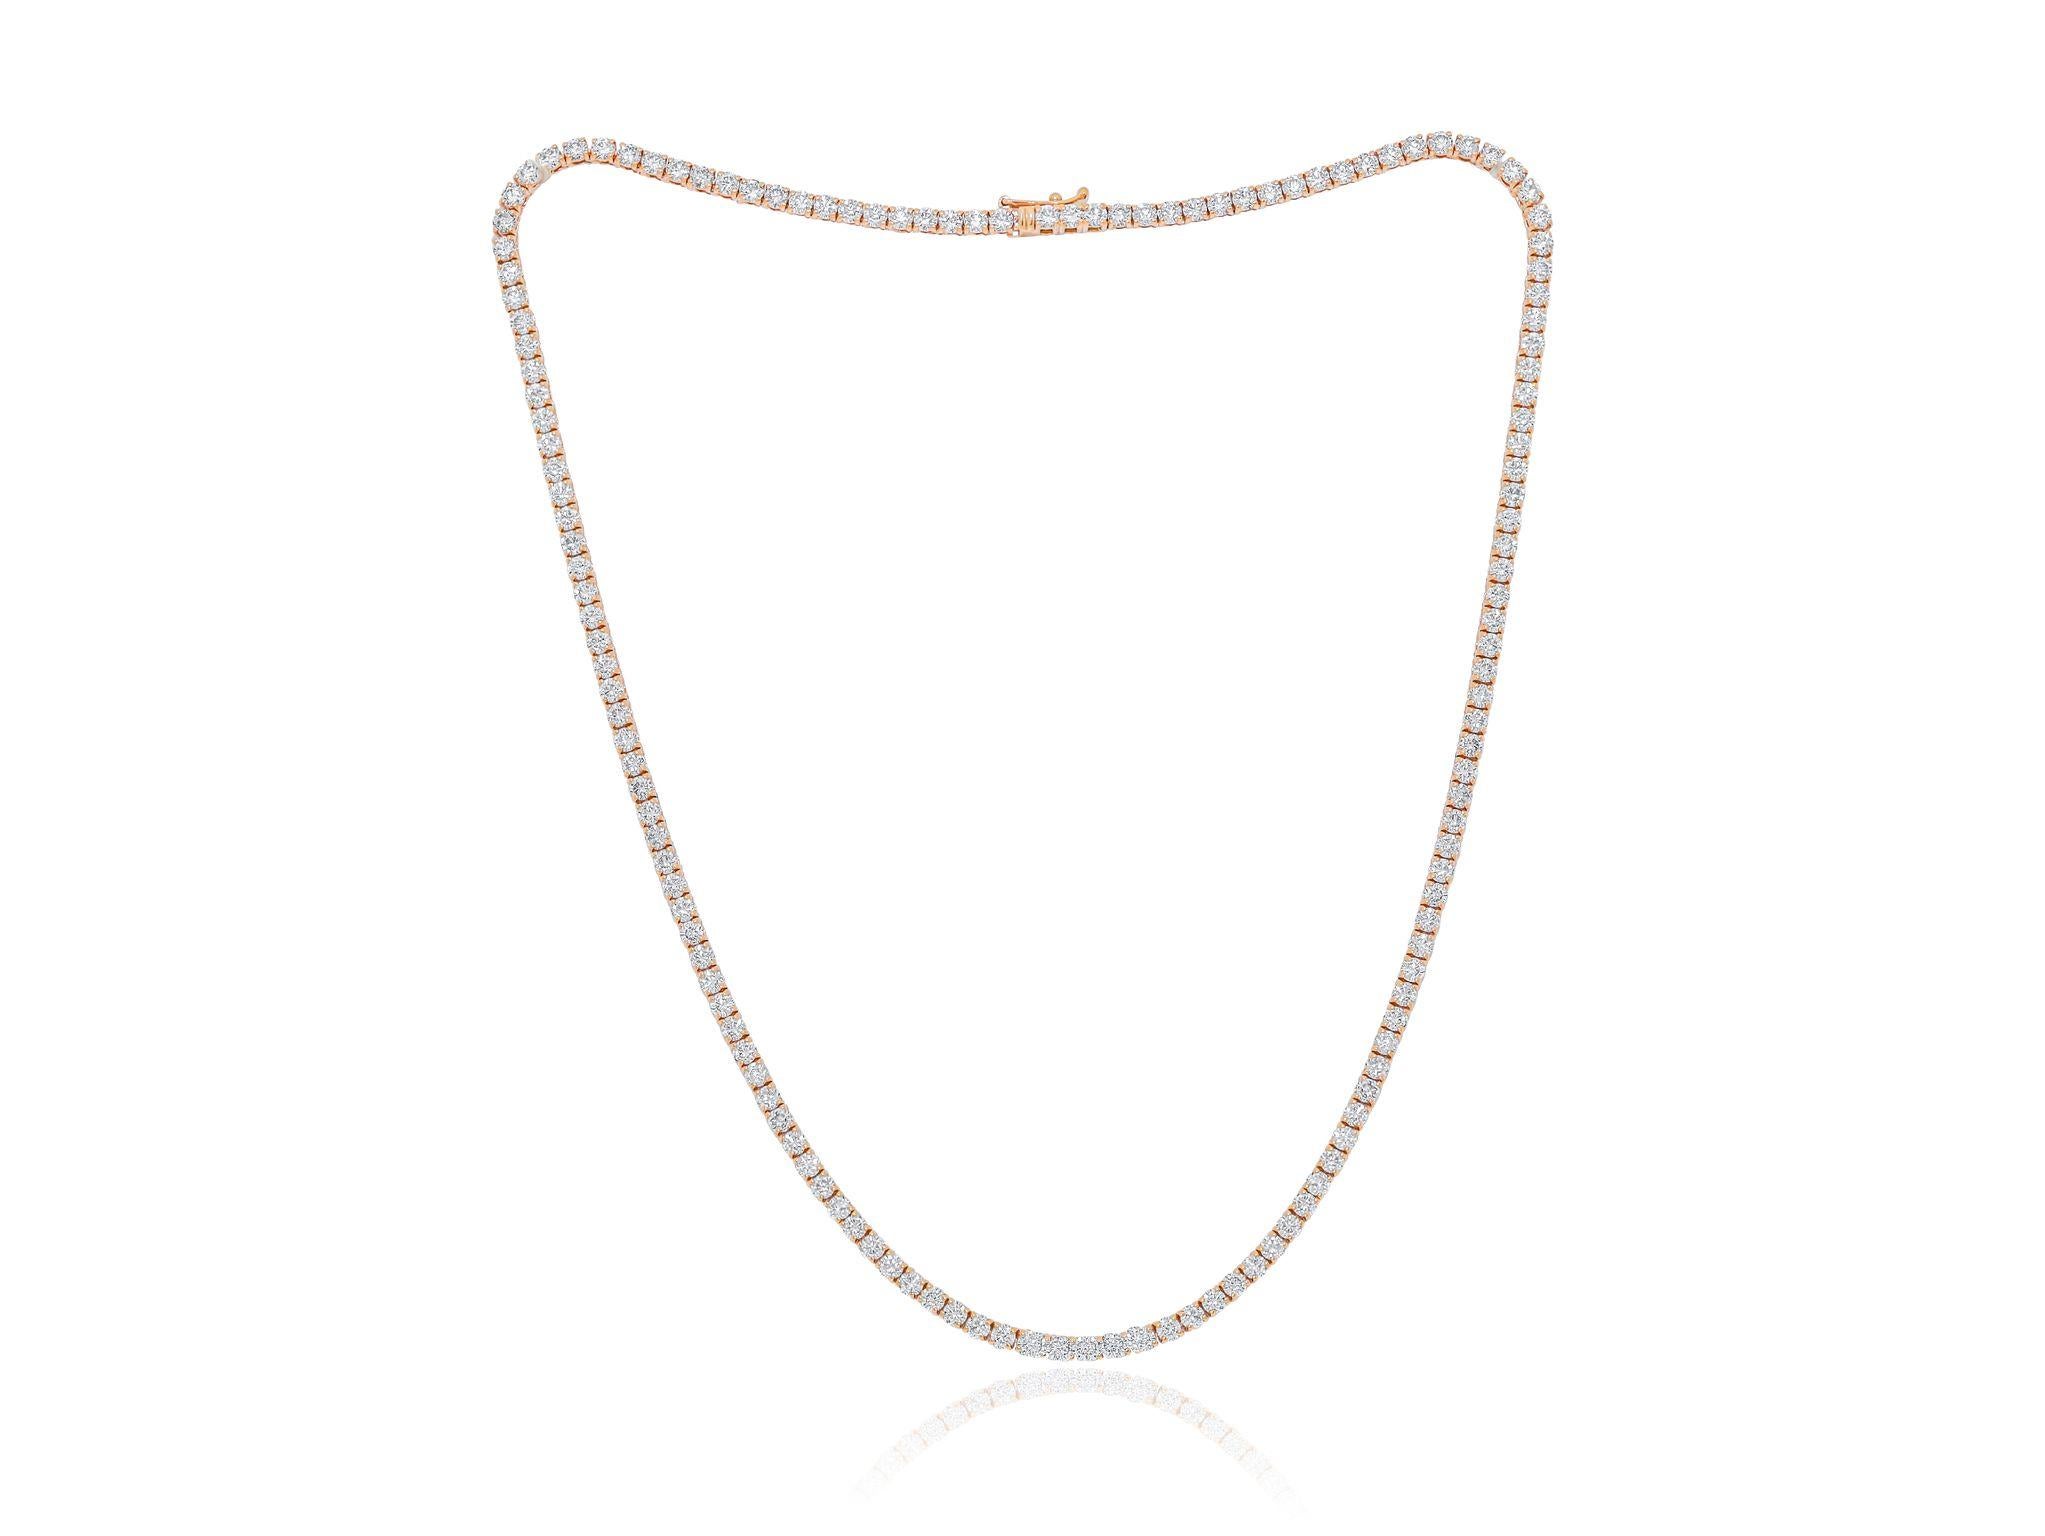 Benutzerdefinierte 14kt Roségold abgestuft Tennis Halskette 10,20 cts von runden Diamanten FG Farbe SI Klarheit. Ausgezeichneter Schnitt.